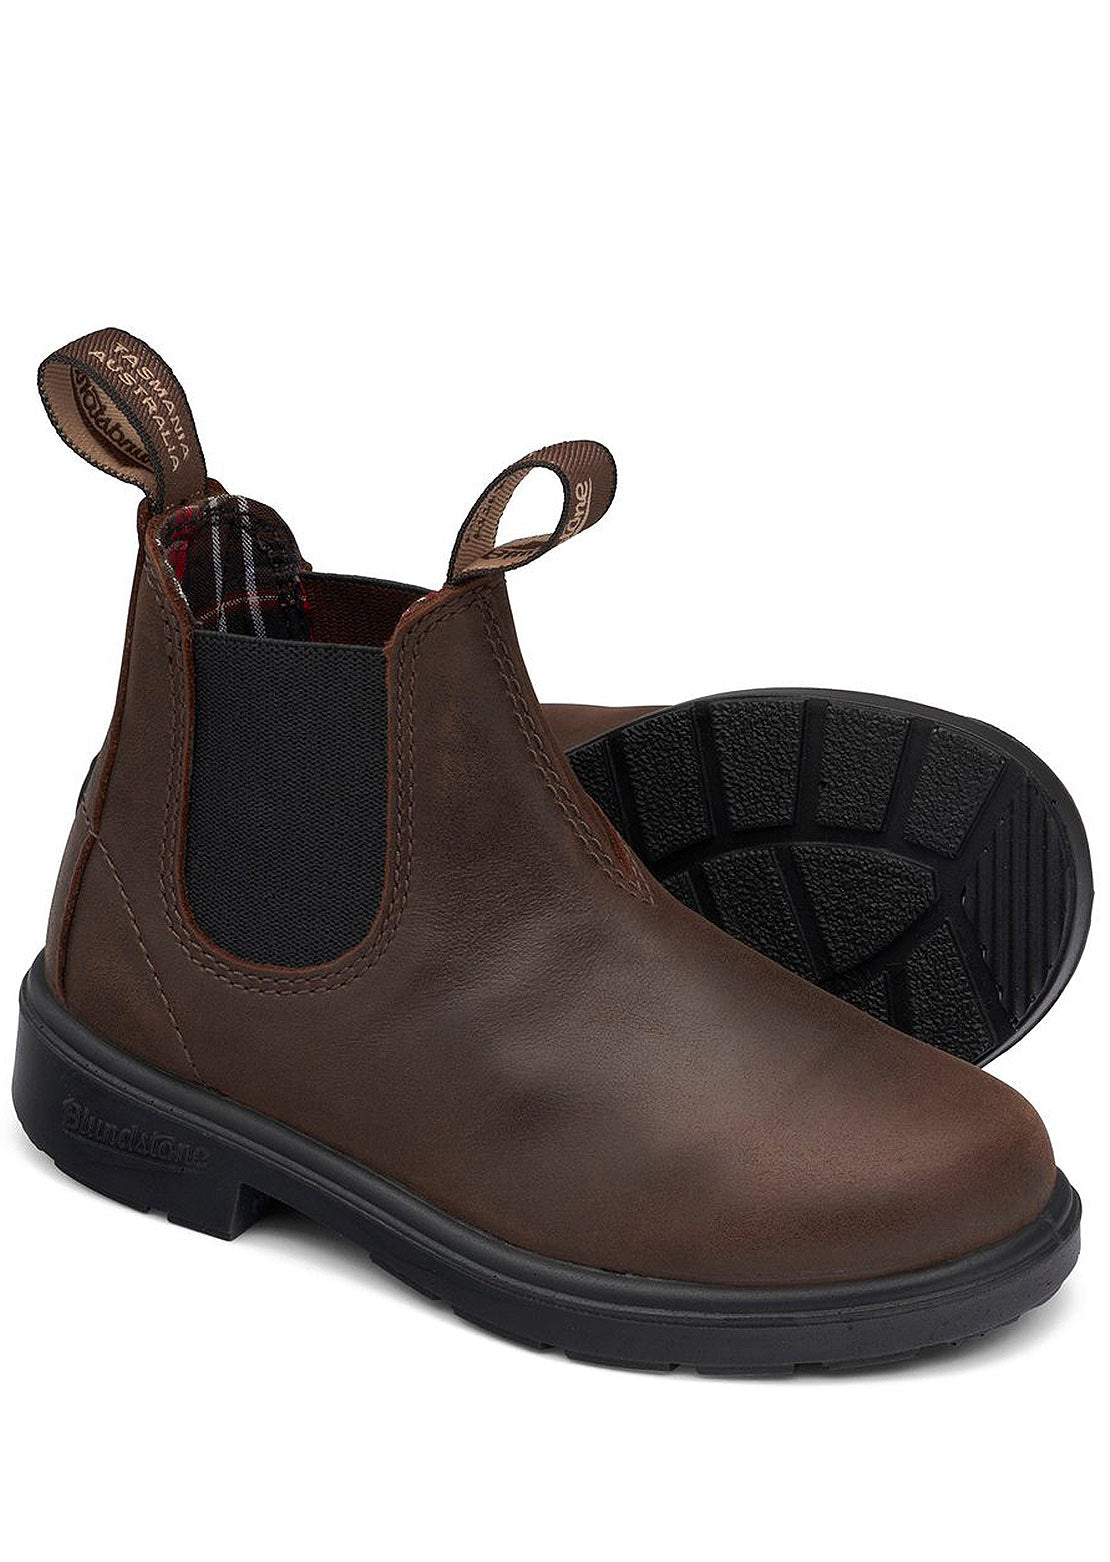 Blundstone Junior 1468 Kids Boots Antique Brown